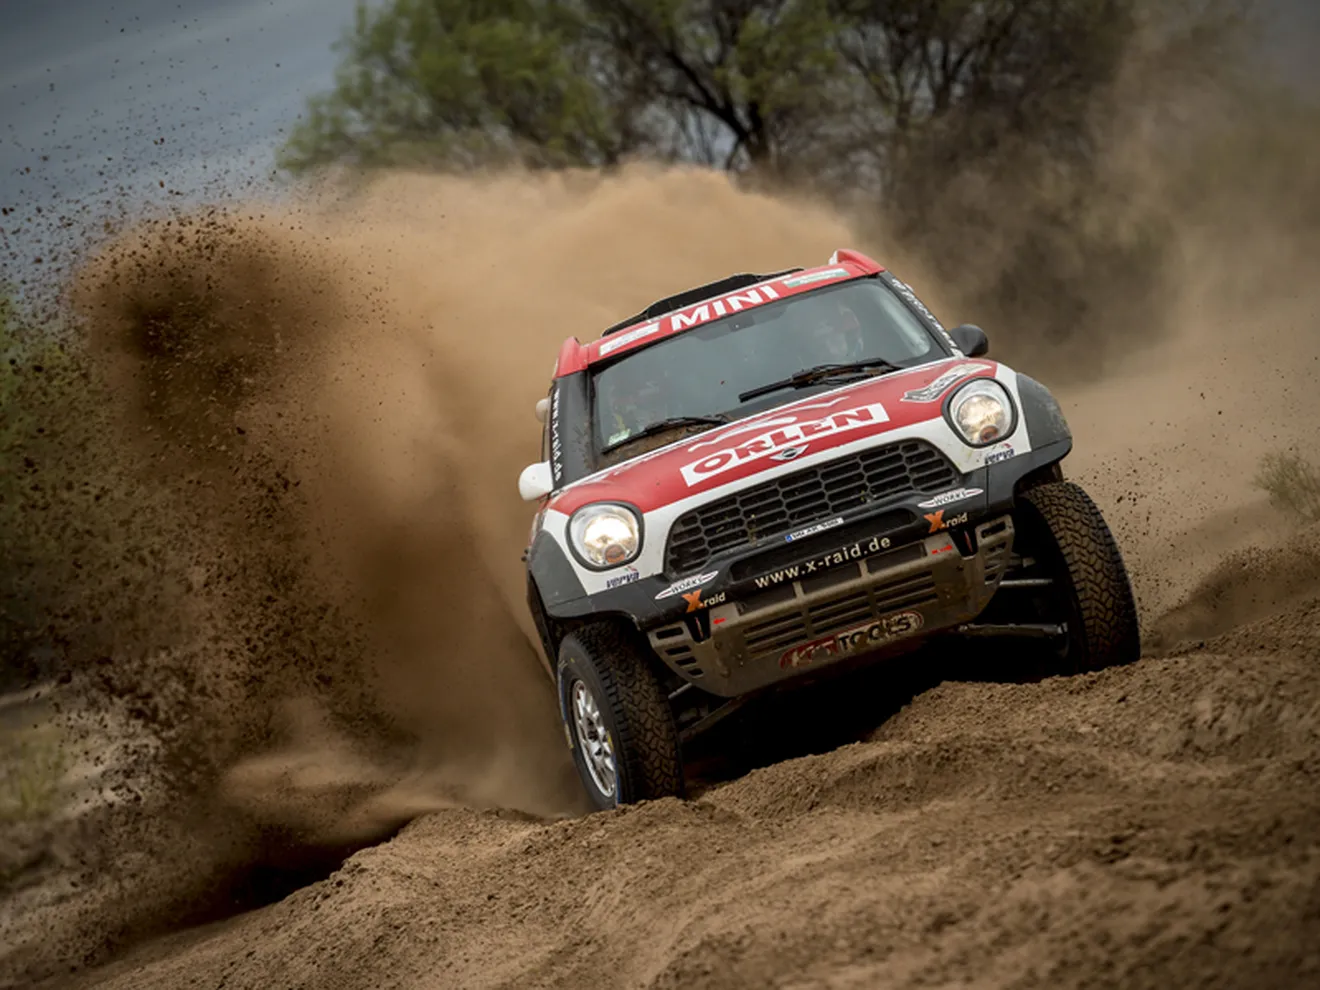 Los 4x4 dominarán el Dakar y ningún buggy debería evitarlo